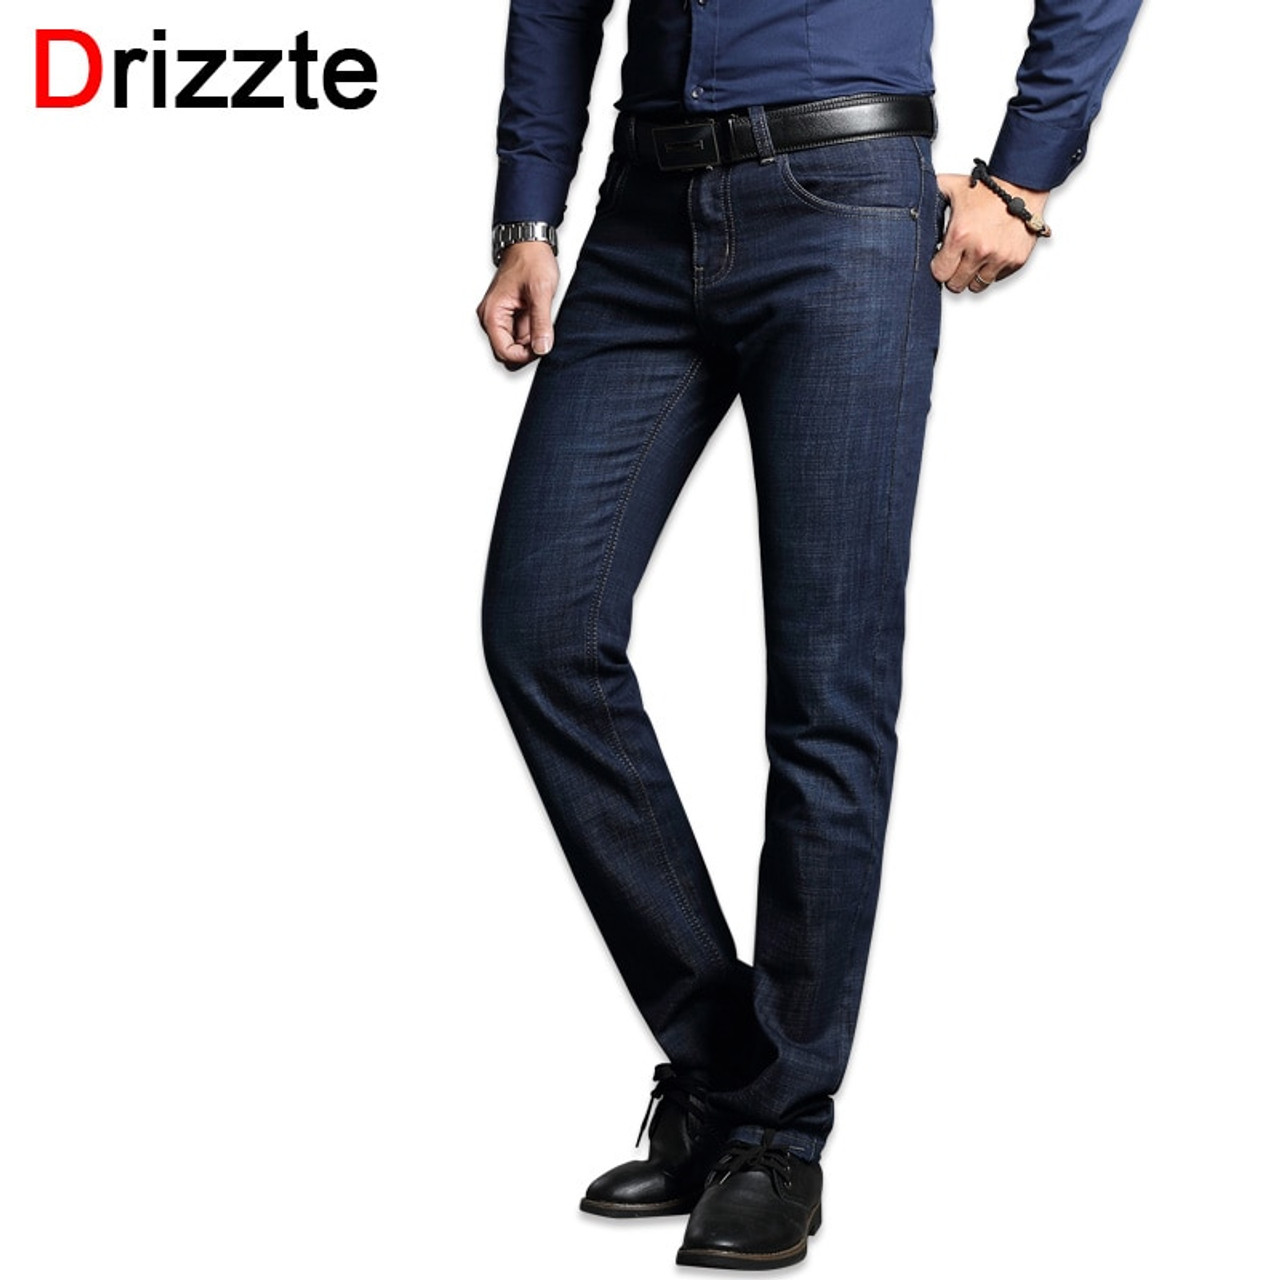 Drizzte Men's Jeans Blue Denim Business Stragiht Silm Fit Jeans Size 30 32 34 35 36 38 Pants Jean for Men -